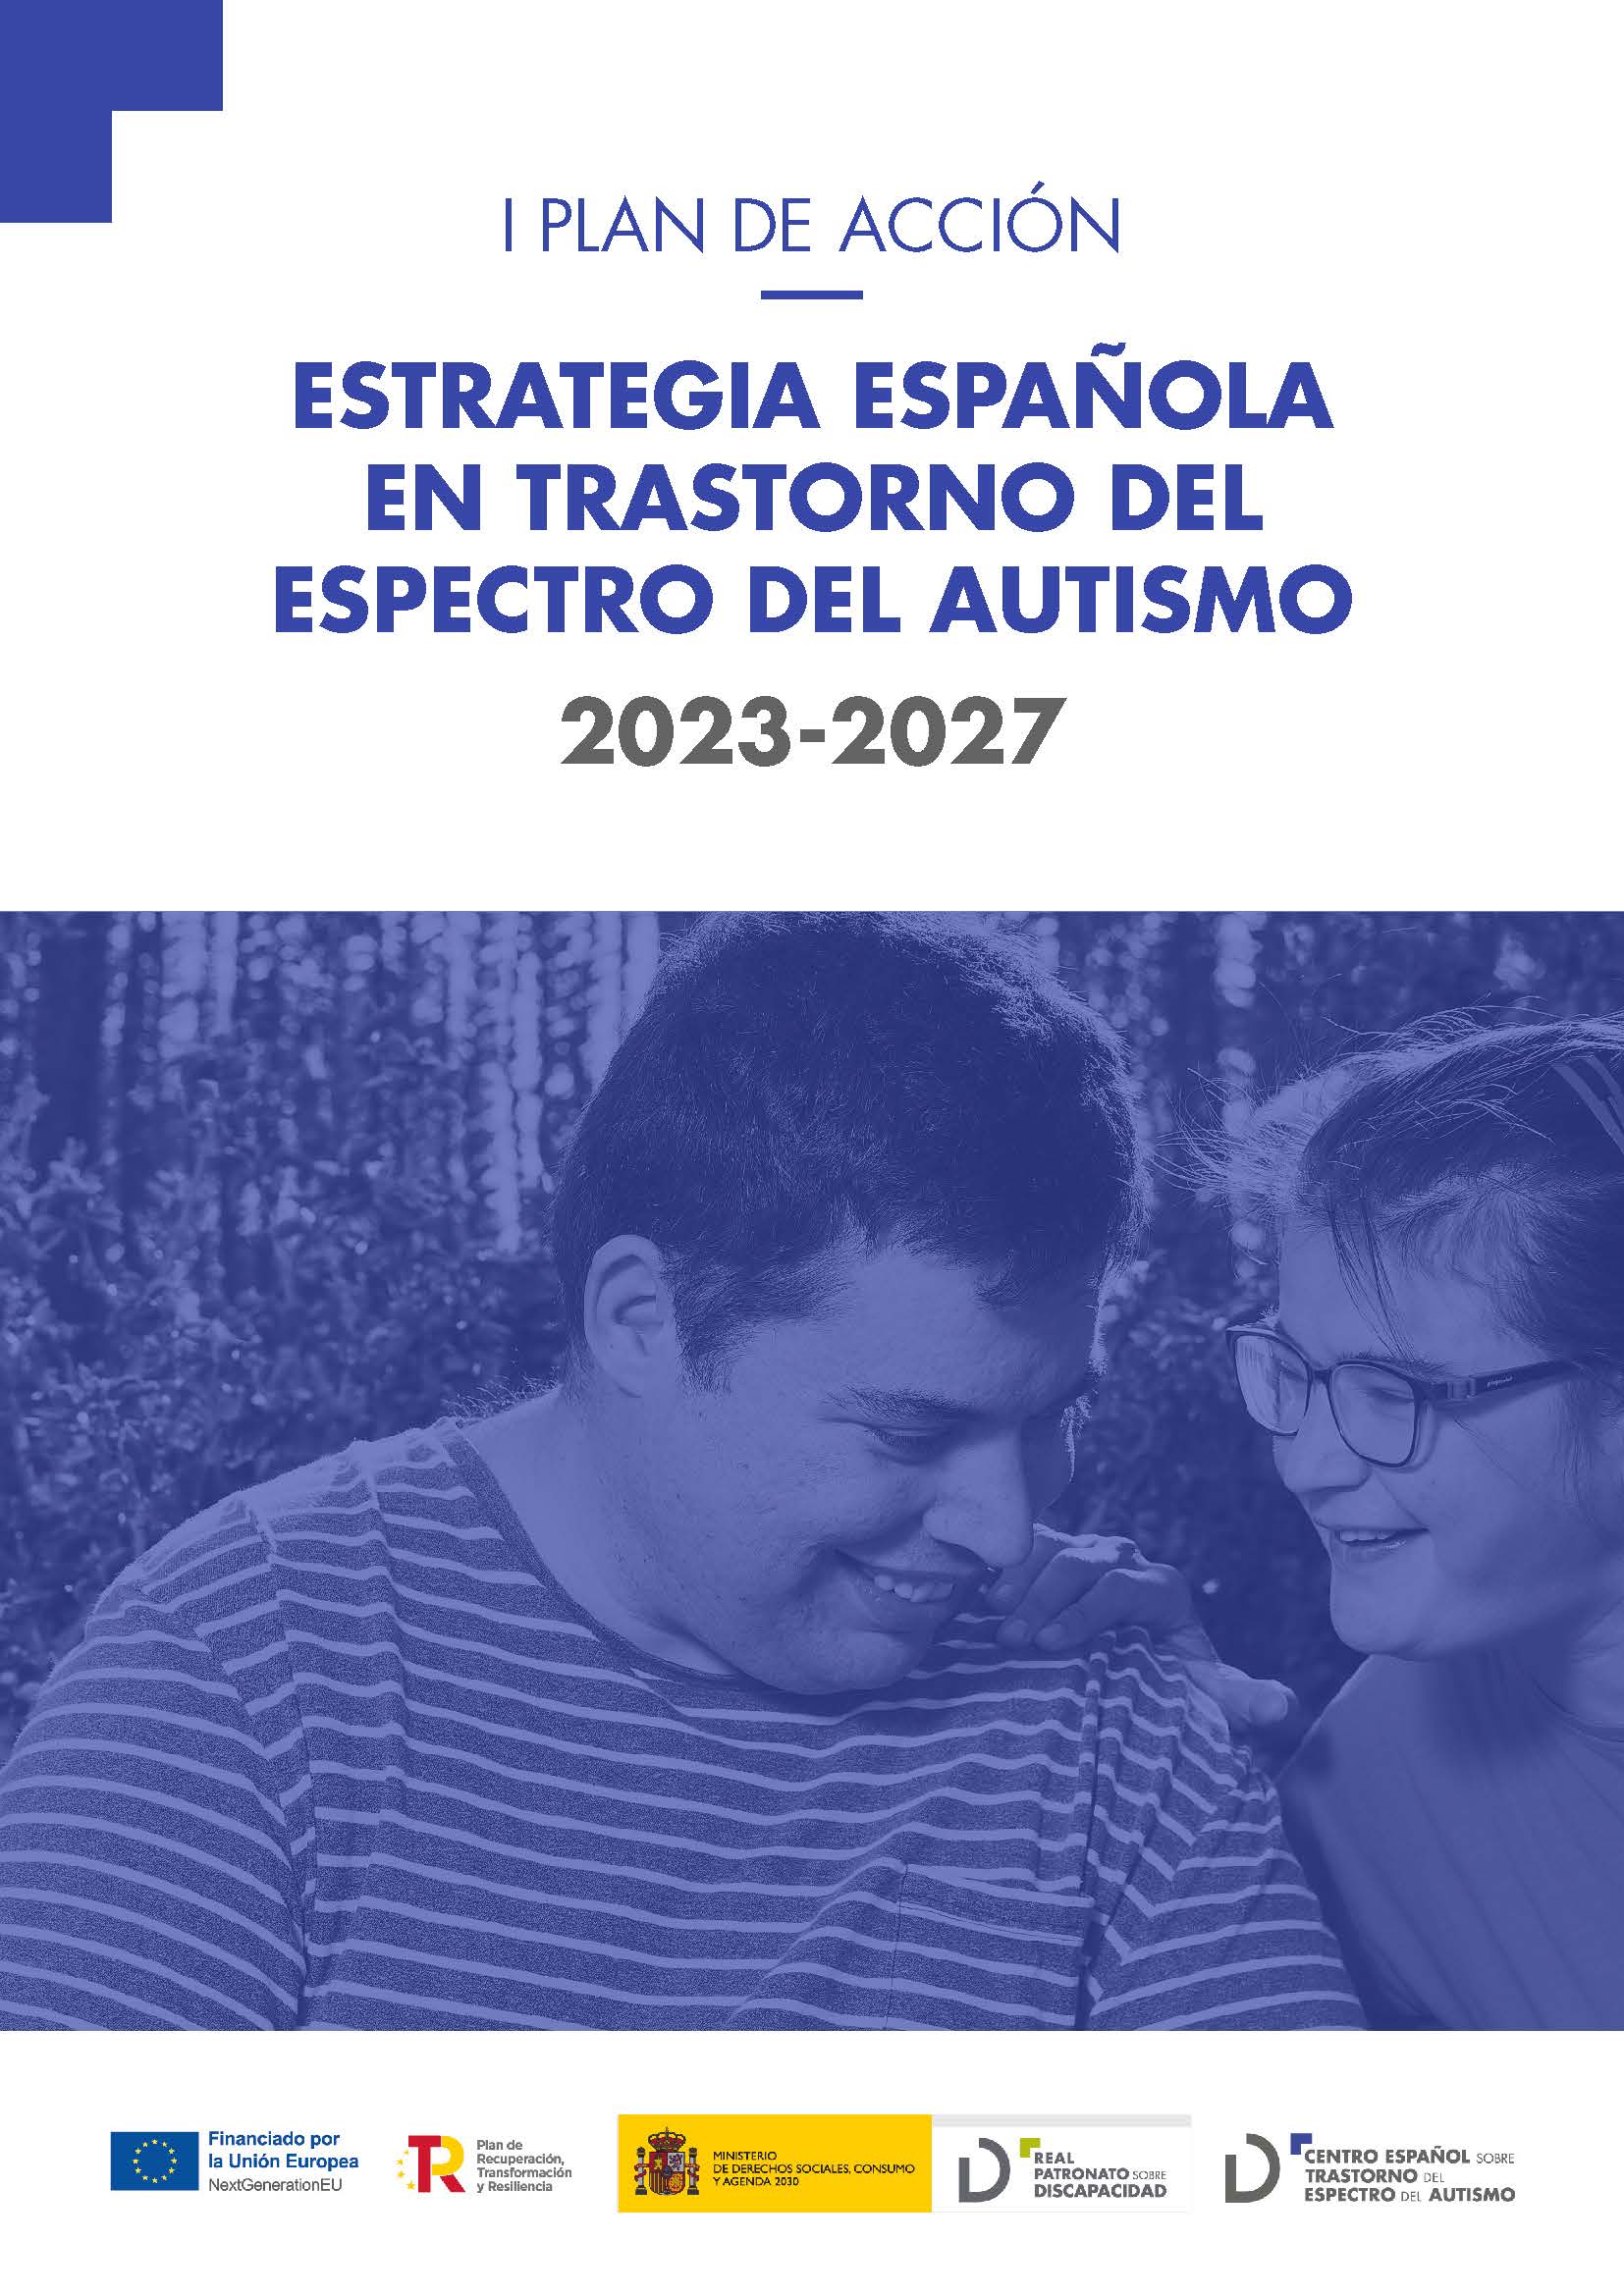 Imagen noticia Portada del I Plan de Acción resultado de la Estrategia Española en Trastornos del Espectro del Autismo